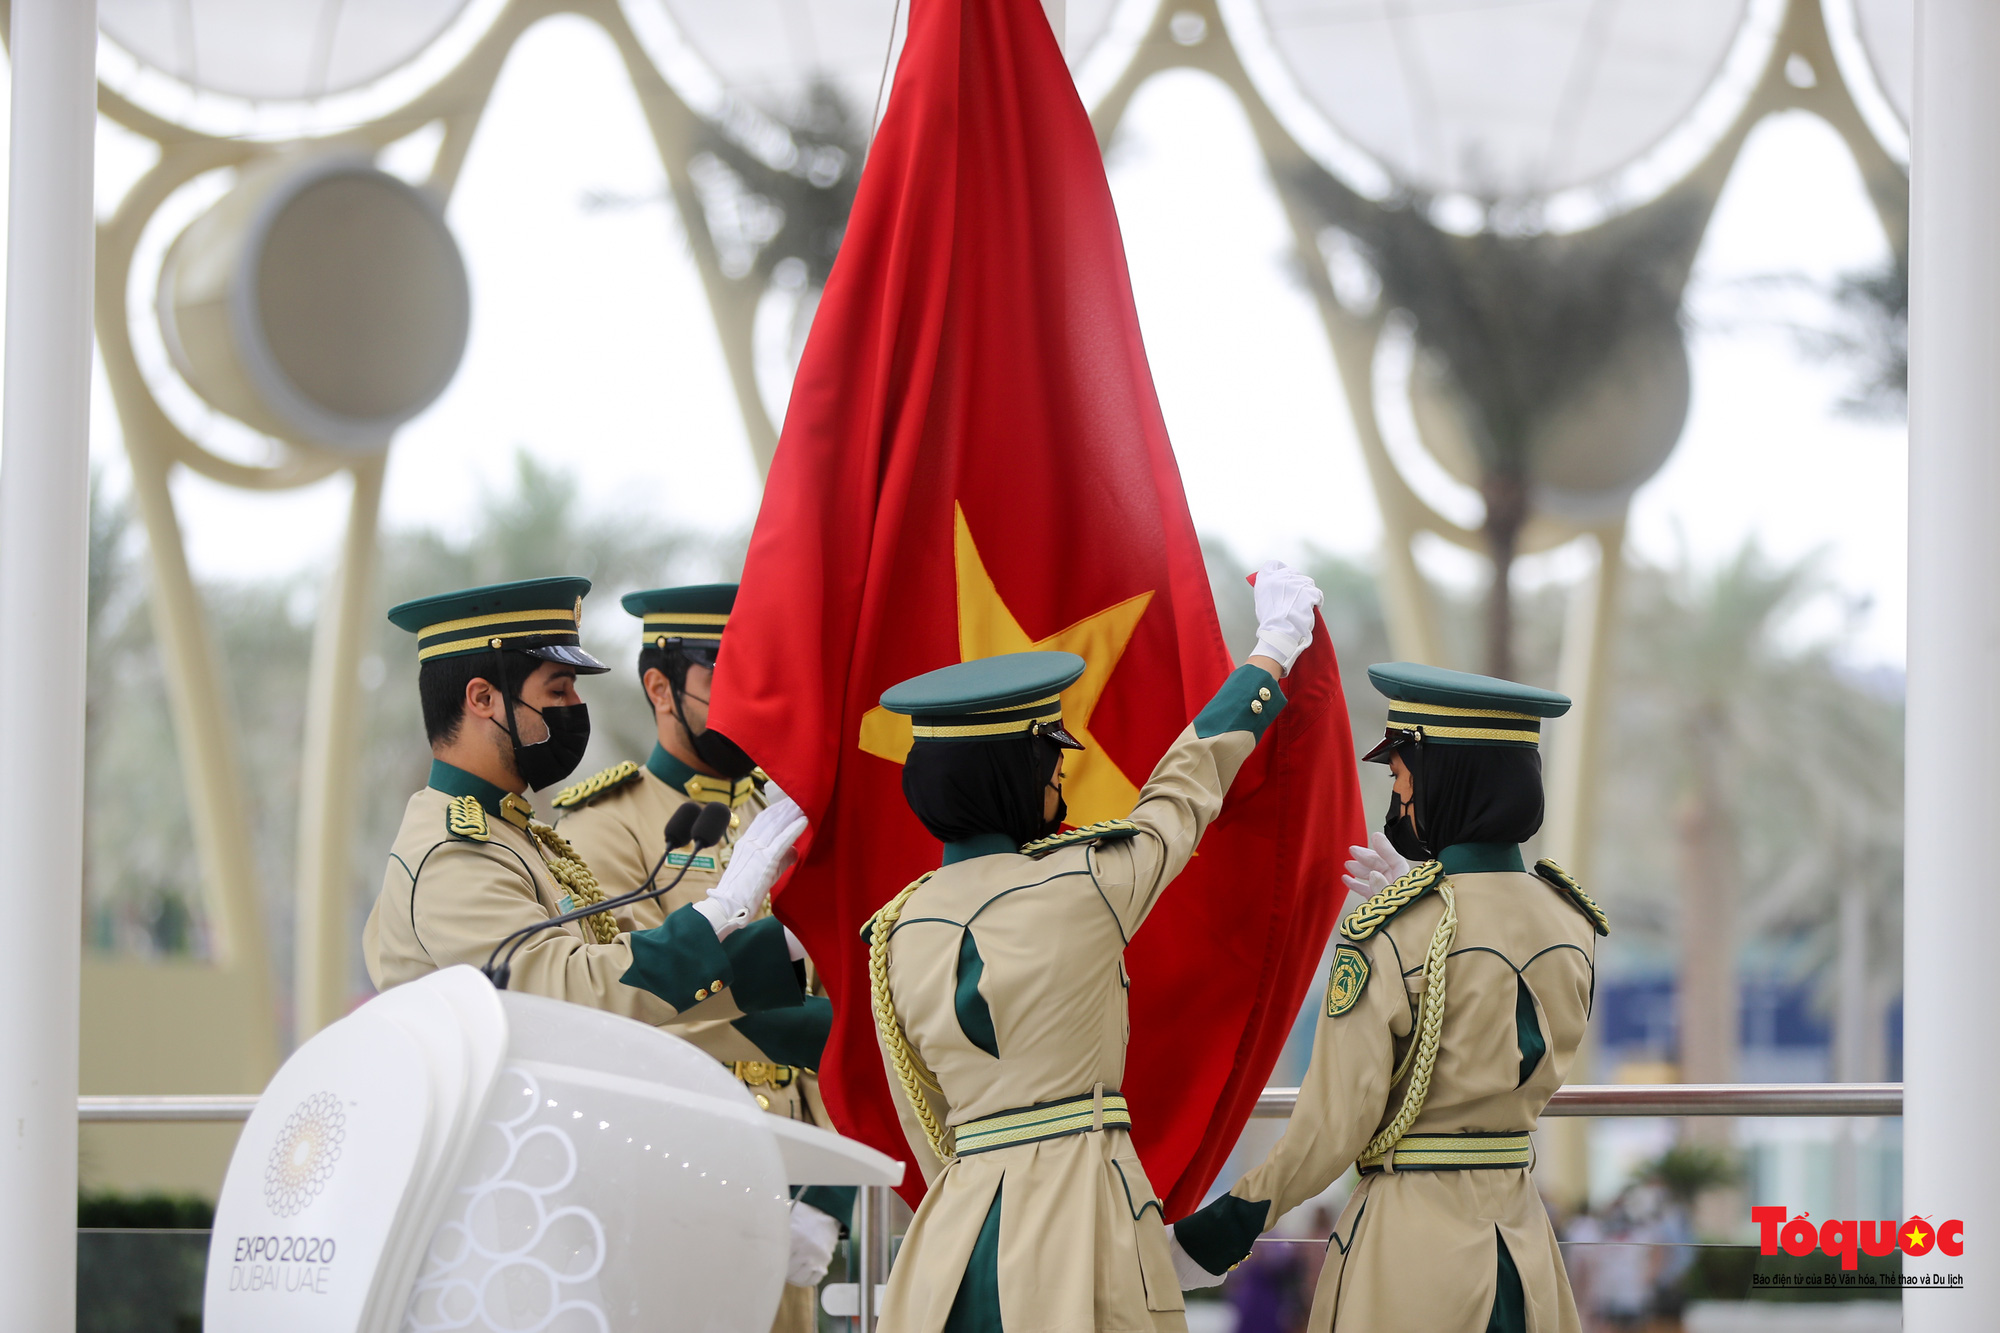 Cờ đại diện Việt Nam tại Expo 2020 Dubai: Với vẻ đẹp của lá cờ mang màu sắc quốc gia, Cờ đại diện Việt Nam tại Expo 2020 Dubai đã trở thành một điểm nhấn thu hút sự chú ý của đông đảo người dân tham quan triển lãm. Hãy xem hình ảnh lá cờ tuyệt đẹp này để cảm nhận lời mời gọi của Việt Nam đến với thế giới.